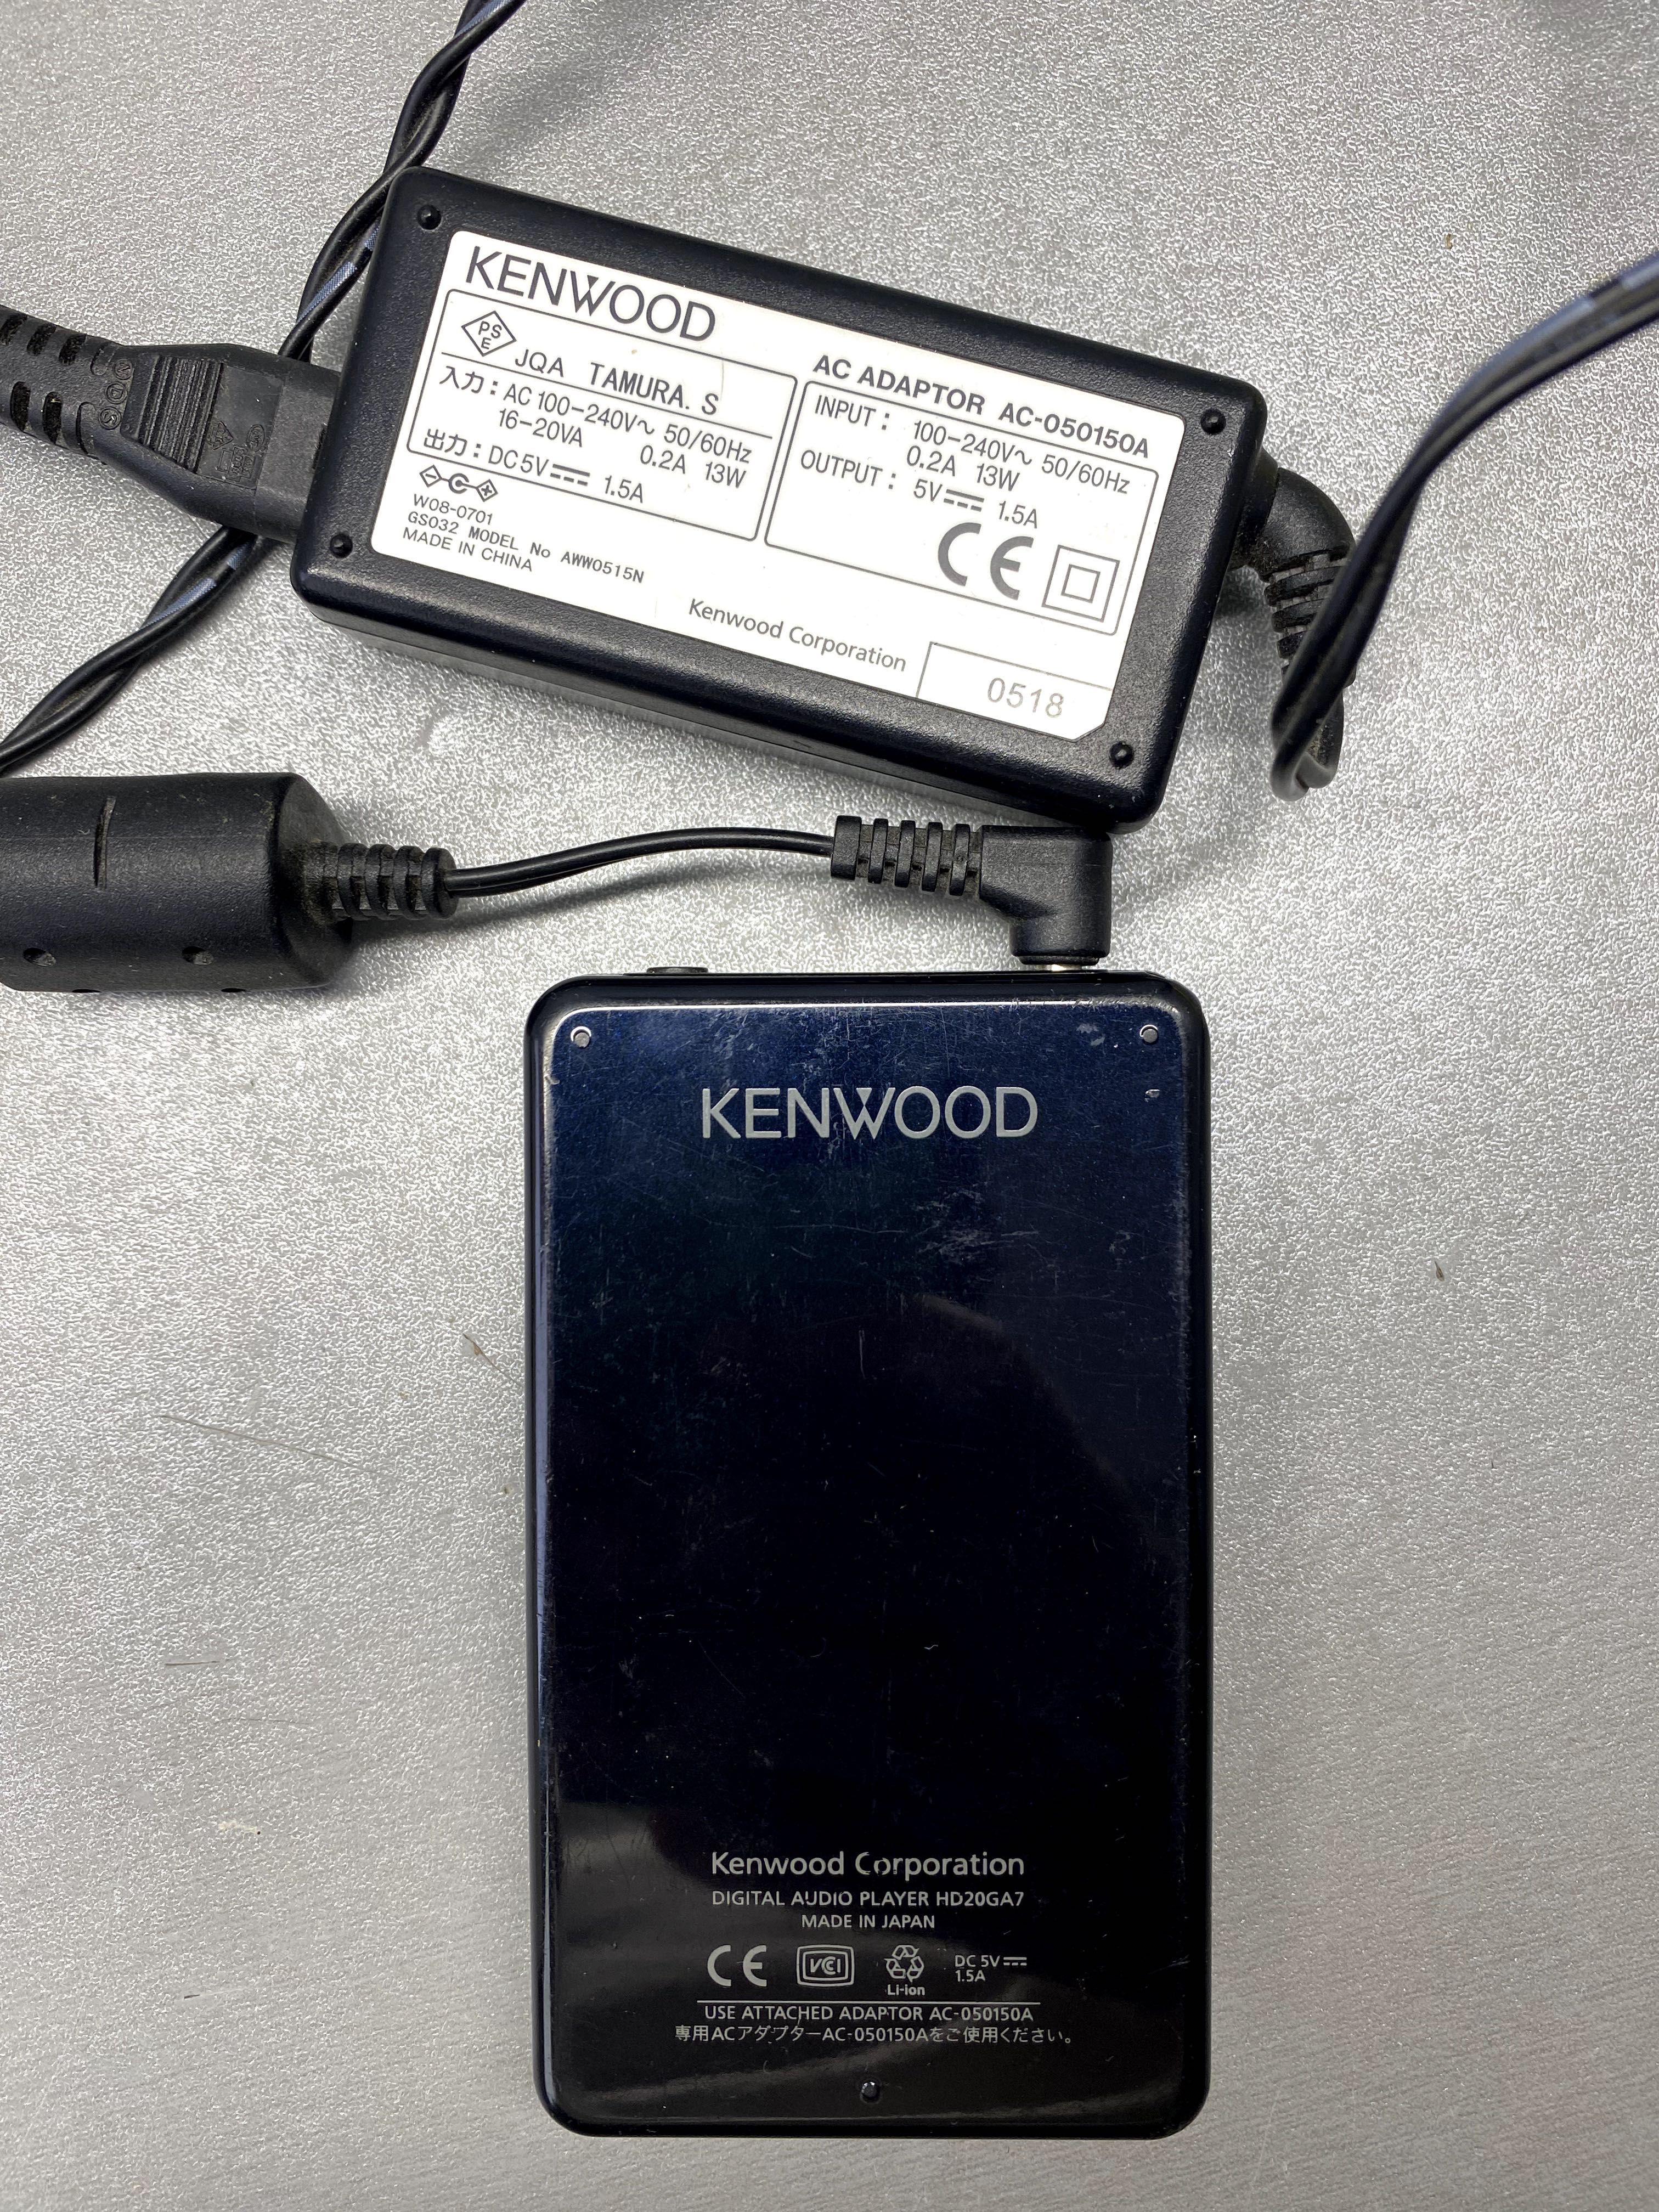 HDD плеєр Kenwood HD20GA7B 20 GB